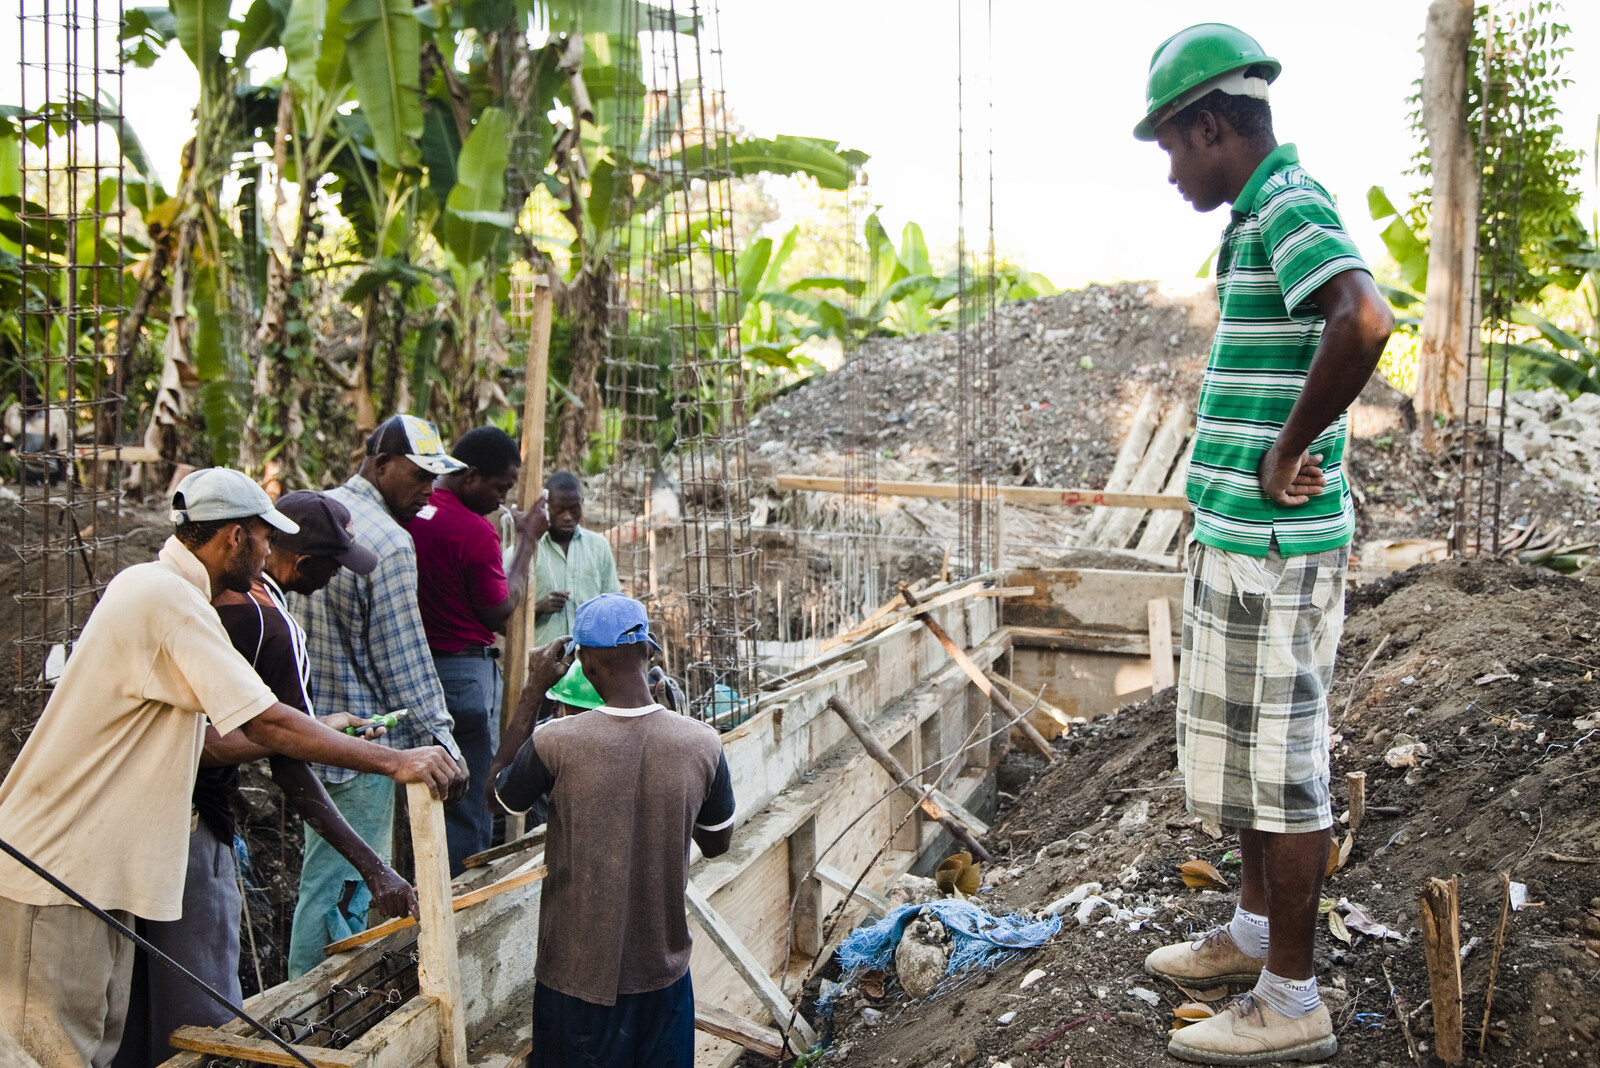 Unsere Bündnisorganisationen unterstützen die Menschen in Haiti nach dem schweren Erdbeben 2010 beim Wiederaufbau.